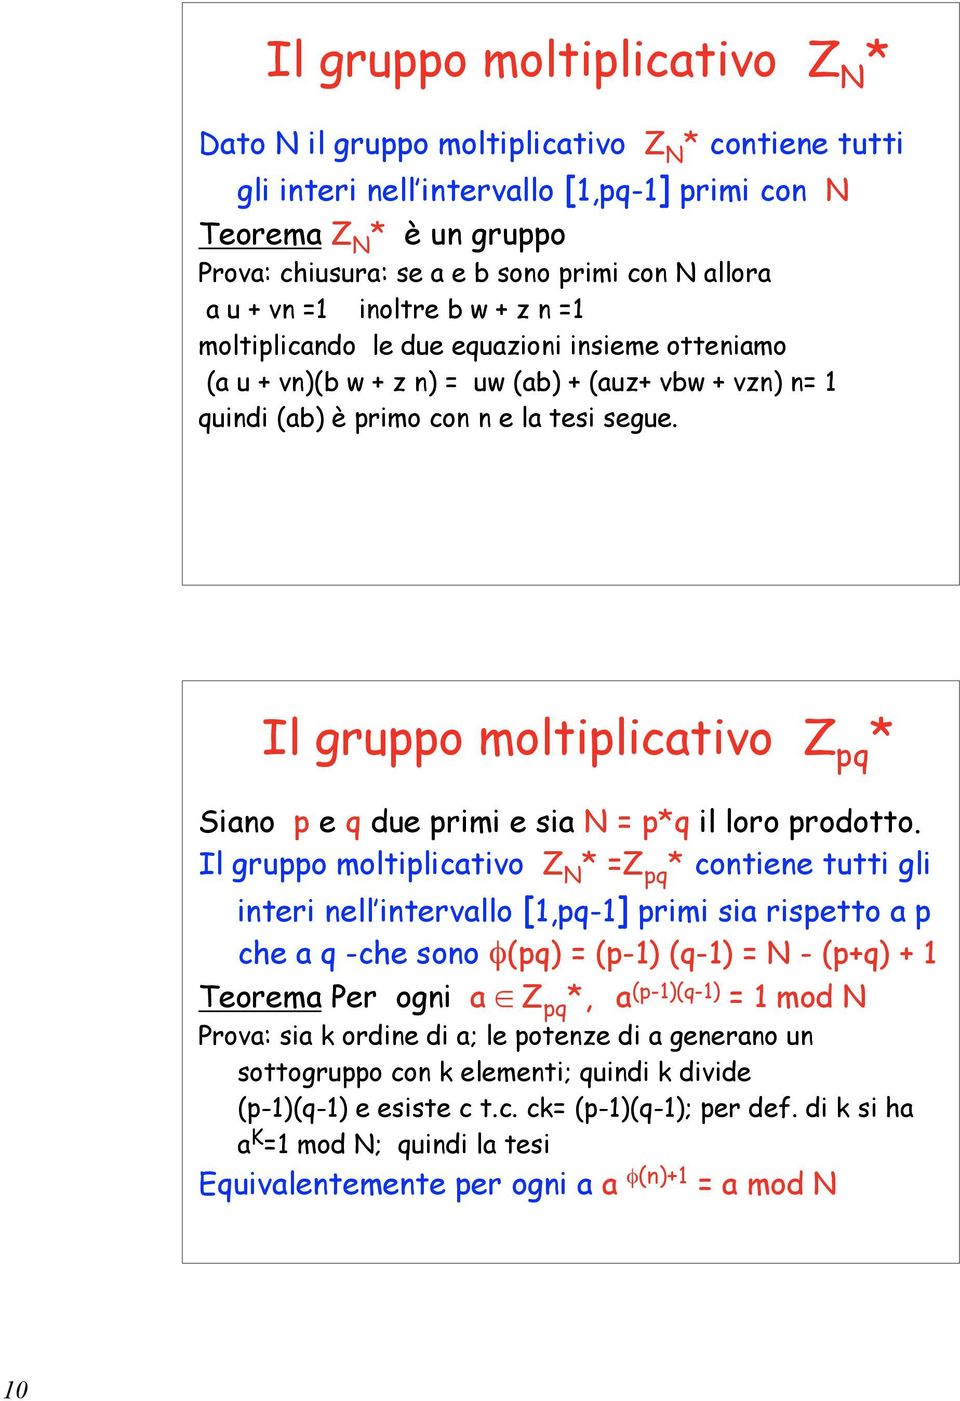 Il gruppo moltiplicativo Z pq * Siano p e q due primi e sia N = p*q il loro prodotto.